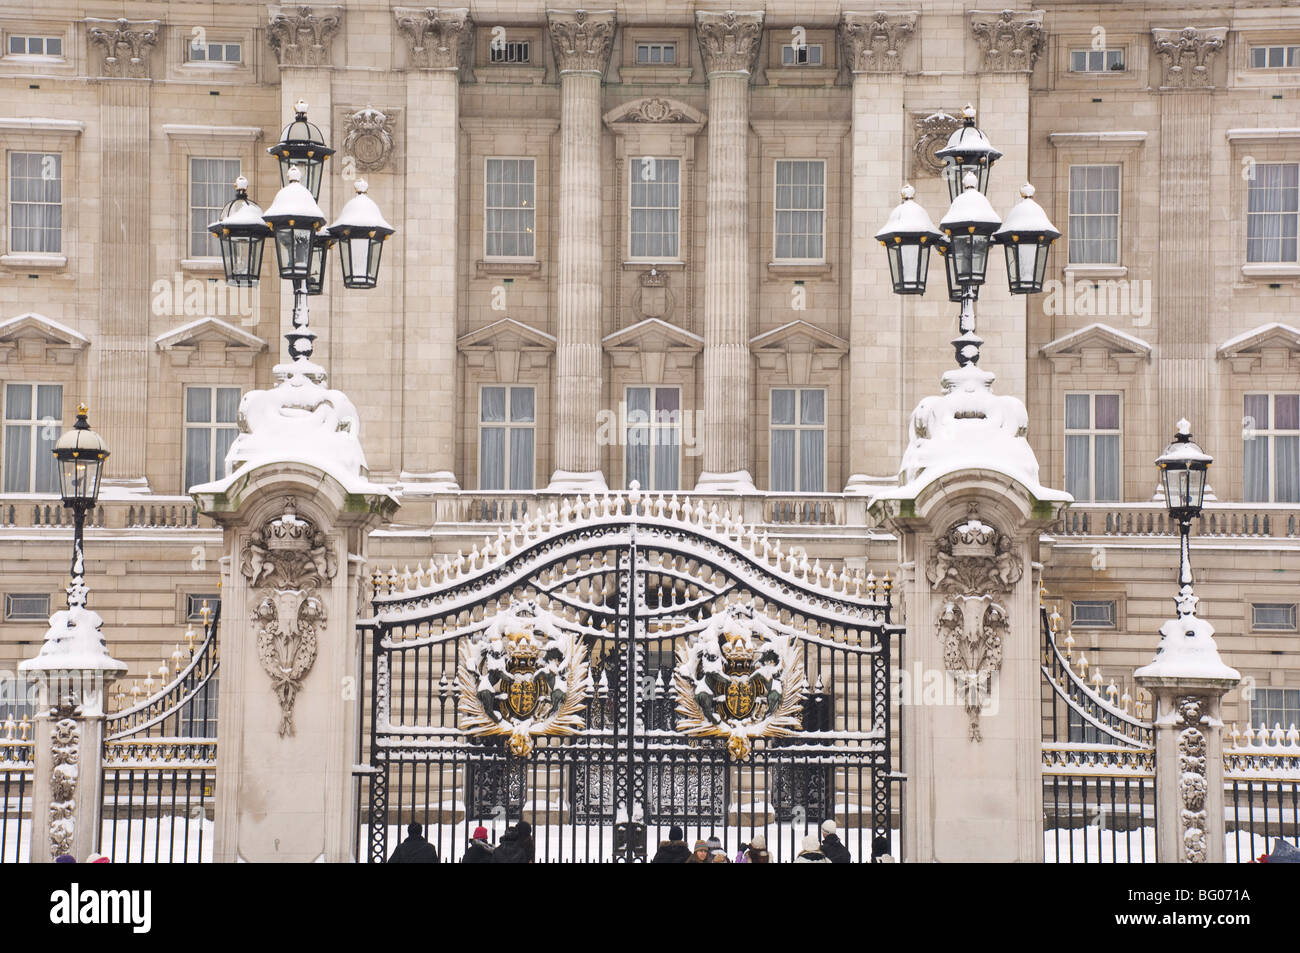 Le palais de Buckingham lors d'une tempête de neige, Londres, Angleterre, Royaume-Uni, Europe Banque D'Images